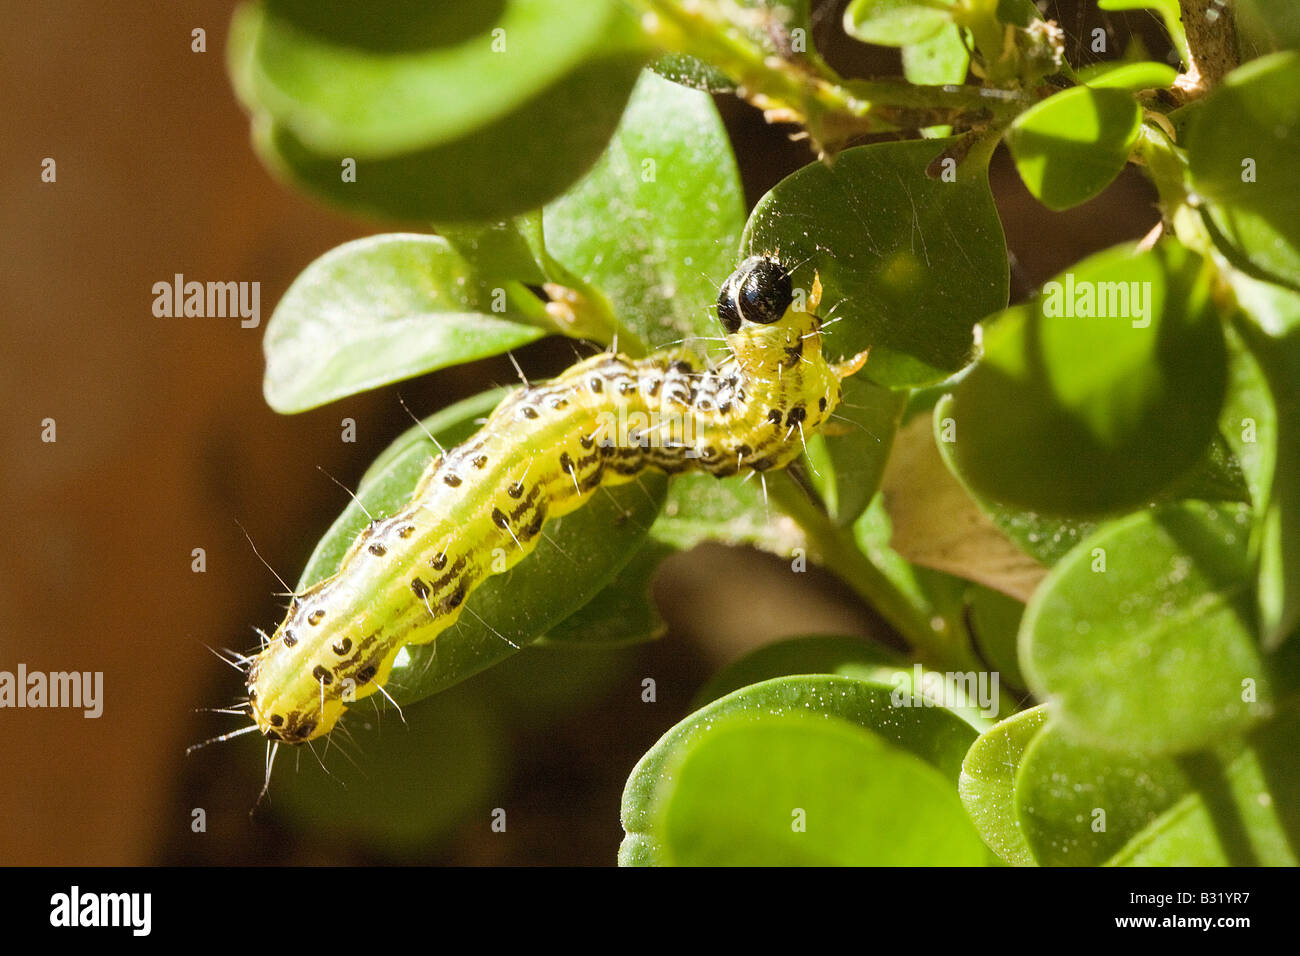 Arbre généalogique de la Pyrale (Glyphodes perspectalis), Caterpillar de manger les feuilles de buis (Buxus sempervirens) Banque D'Images